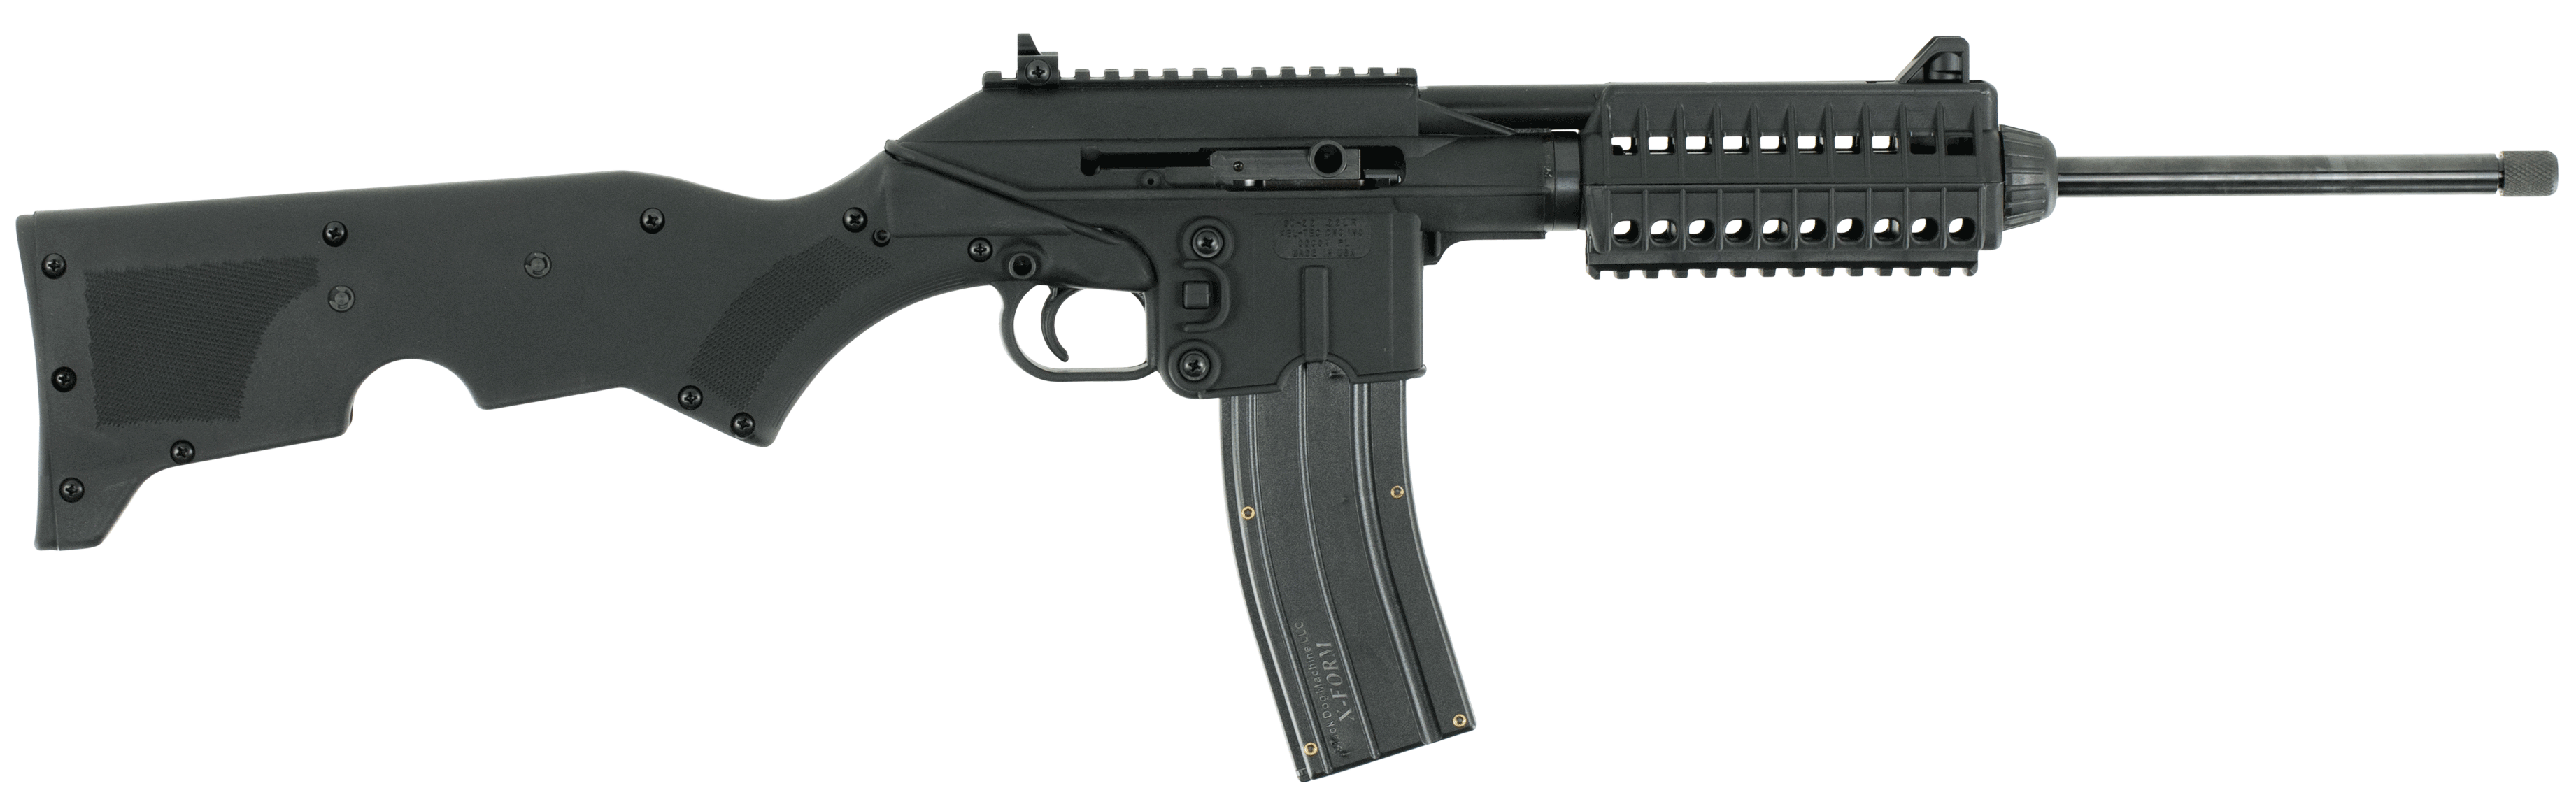 kel-tec-su22cablk-su-22-22-lr-caliber-with-26-1-capacity-16-10-barrel